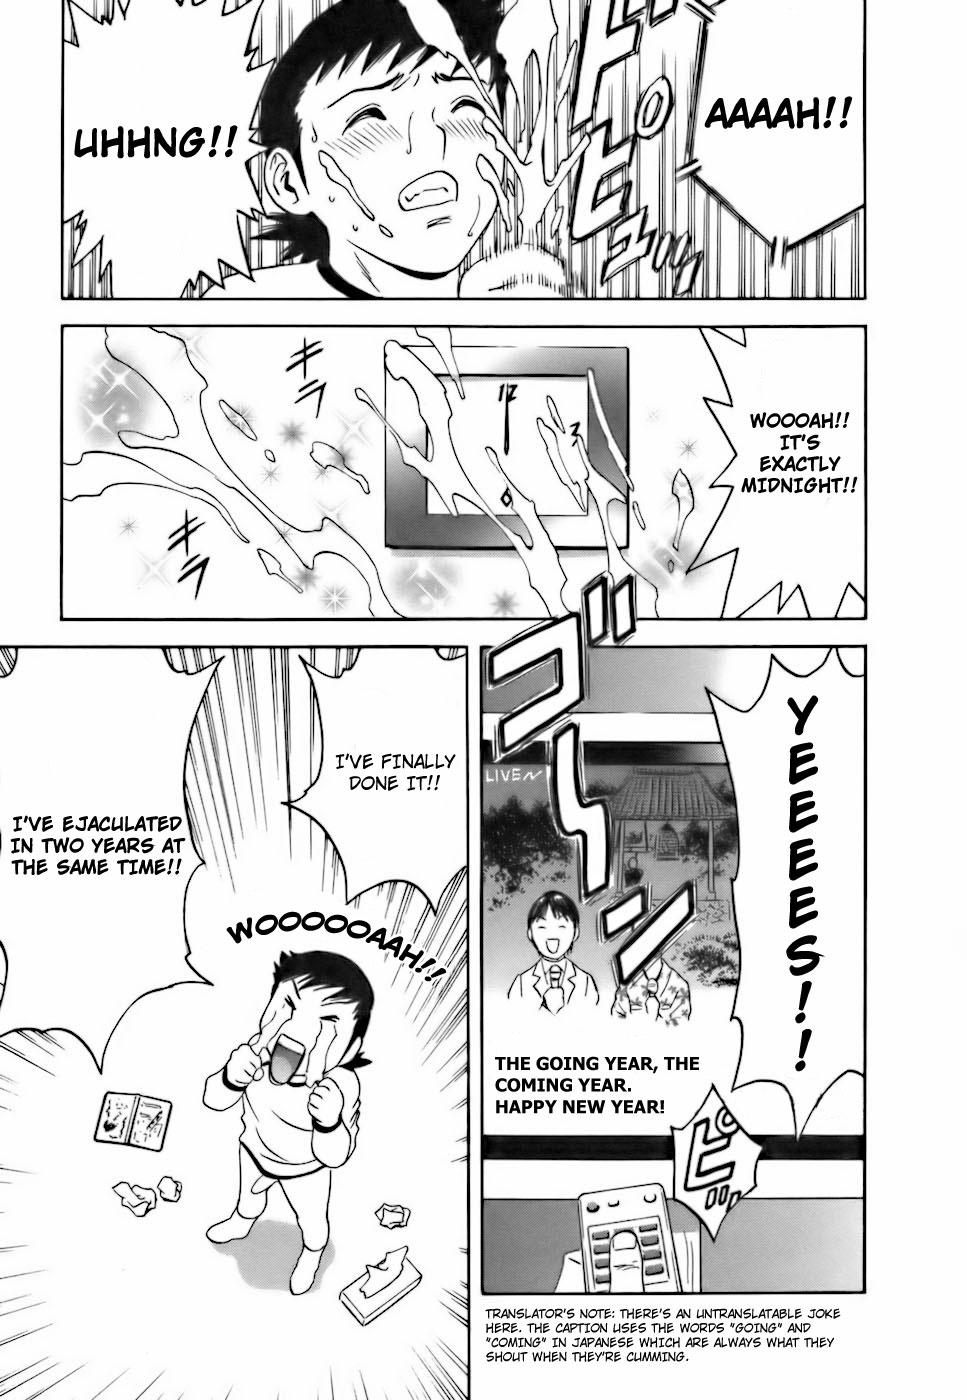 [Hidemaru] Mo-Retsu! Boin Sensei (Boing Boing Teacher) Vol.3 [English] [4dawgz] [Tadanohito] 161